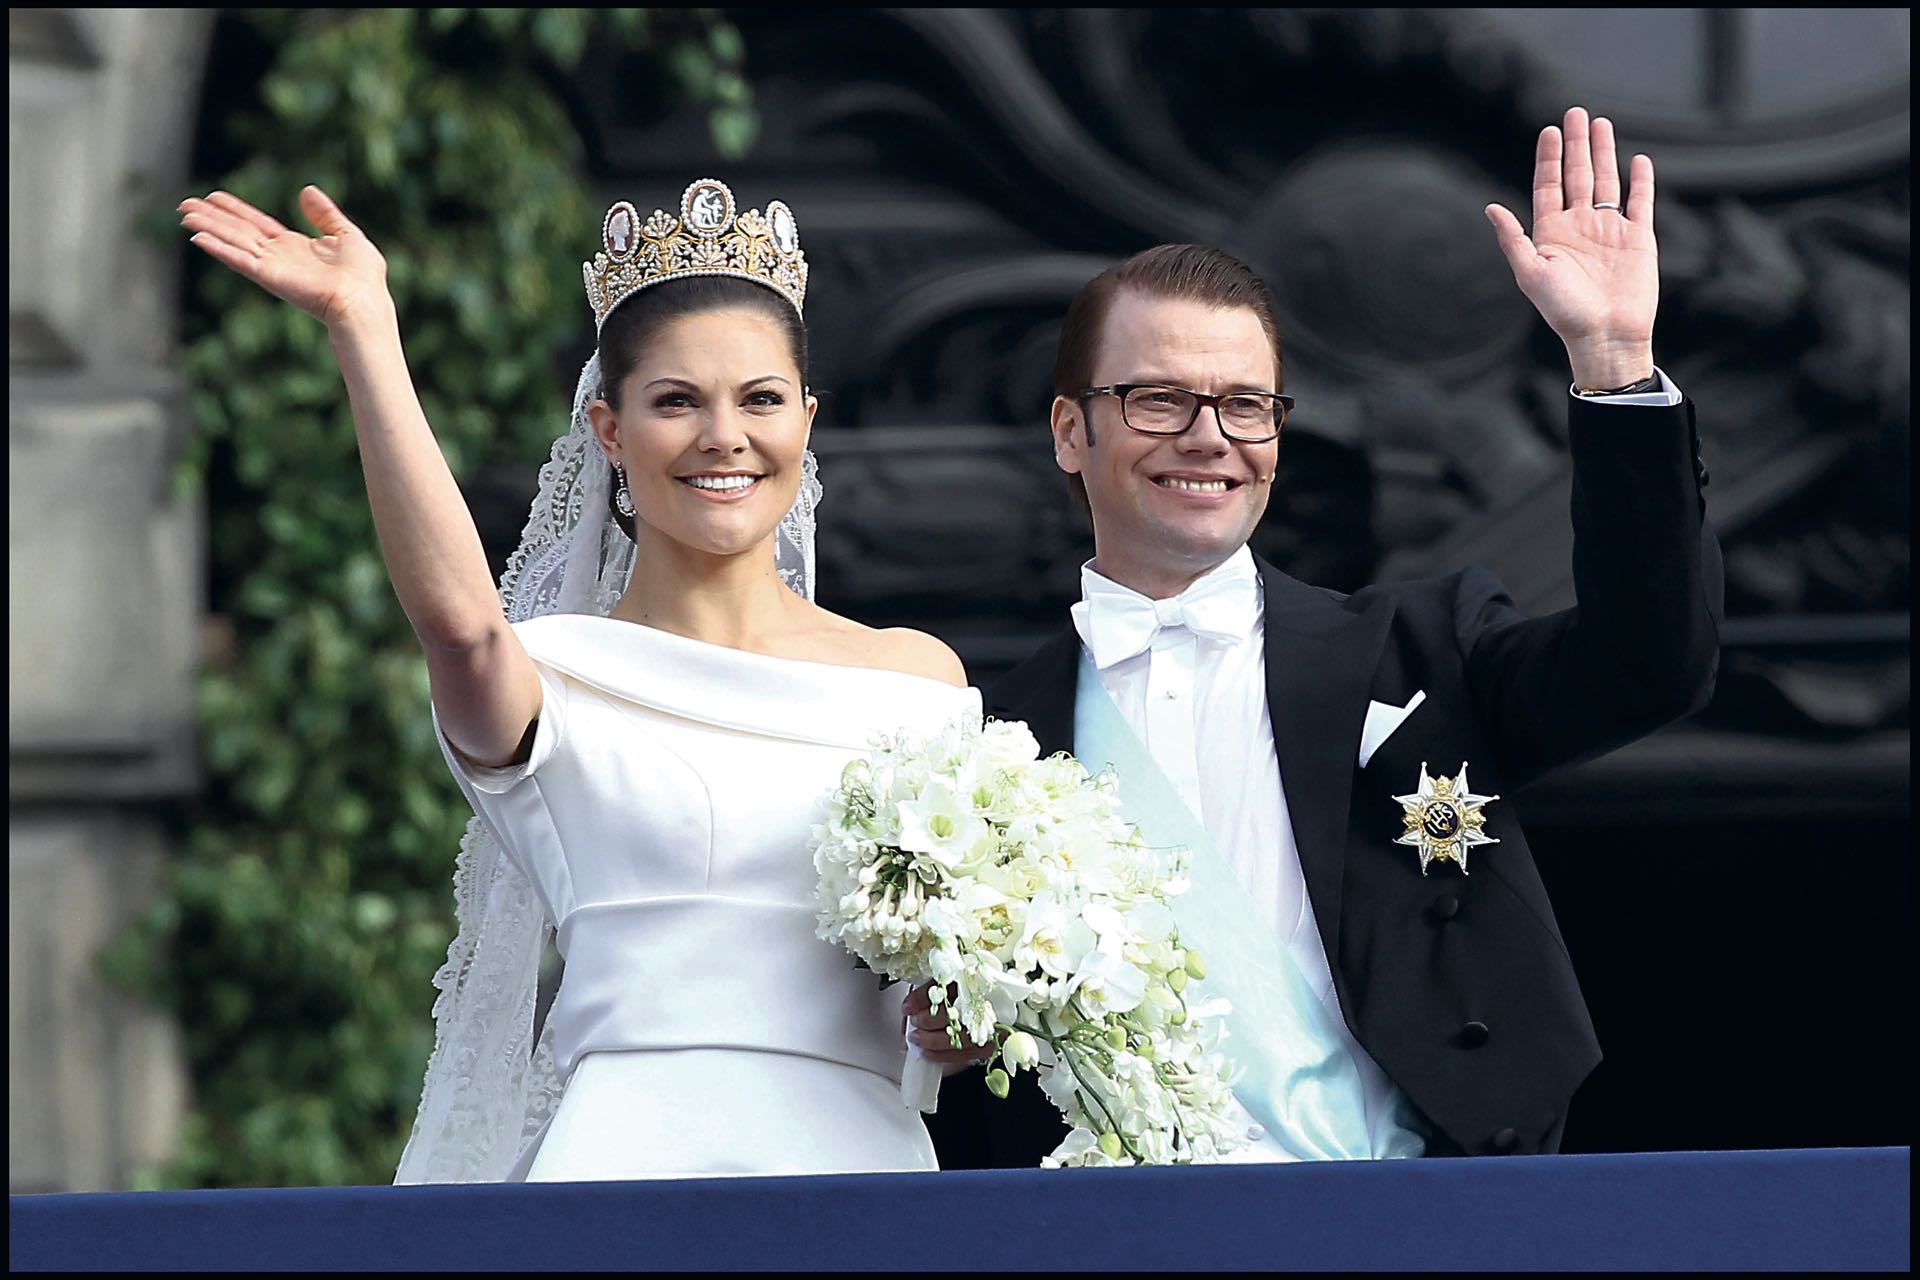 Daniel Westling es príncipe de Suecia y duque consorte de la princesa heredera de Suecia, Victoria